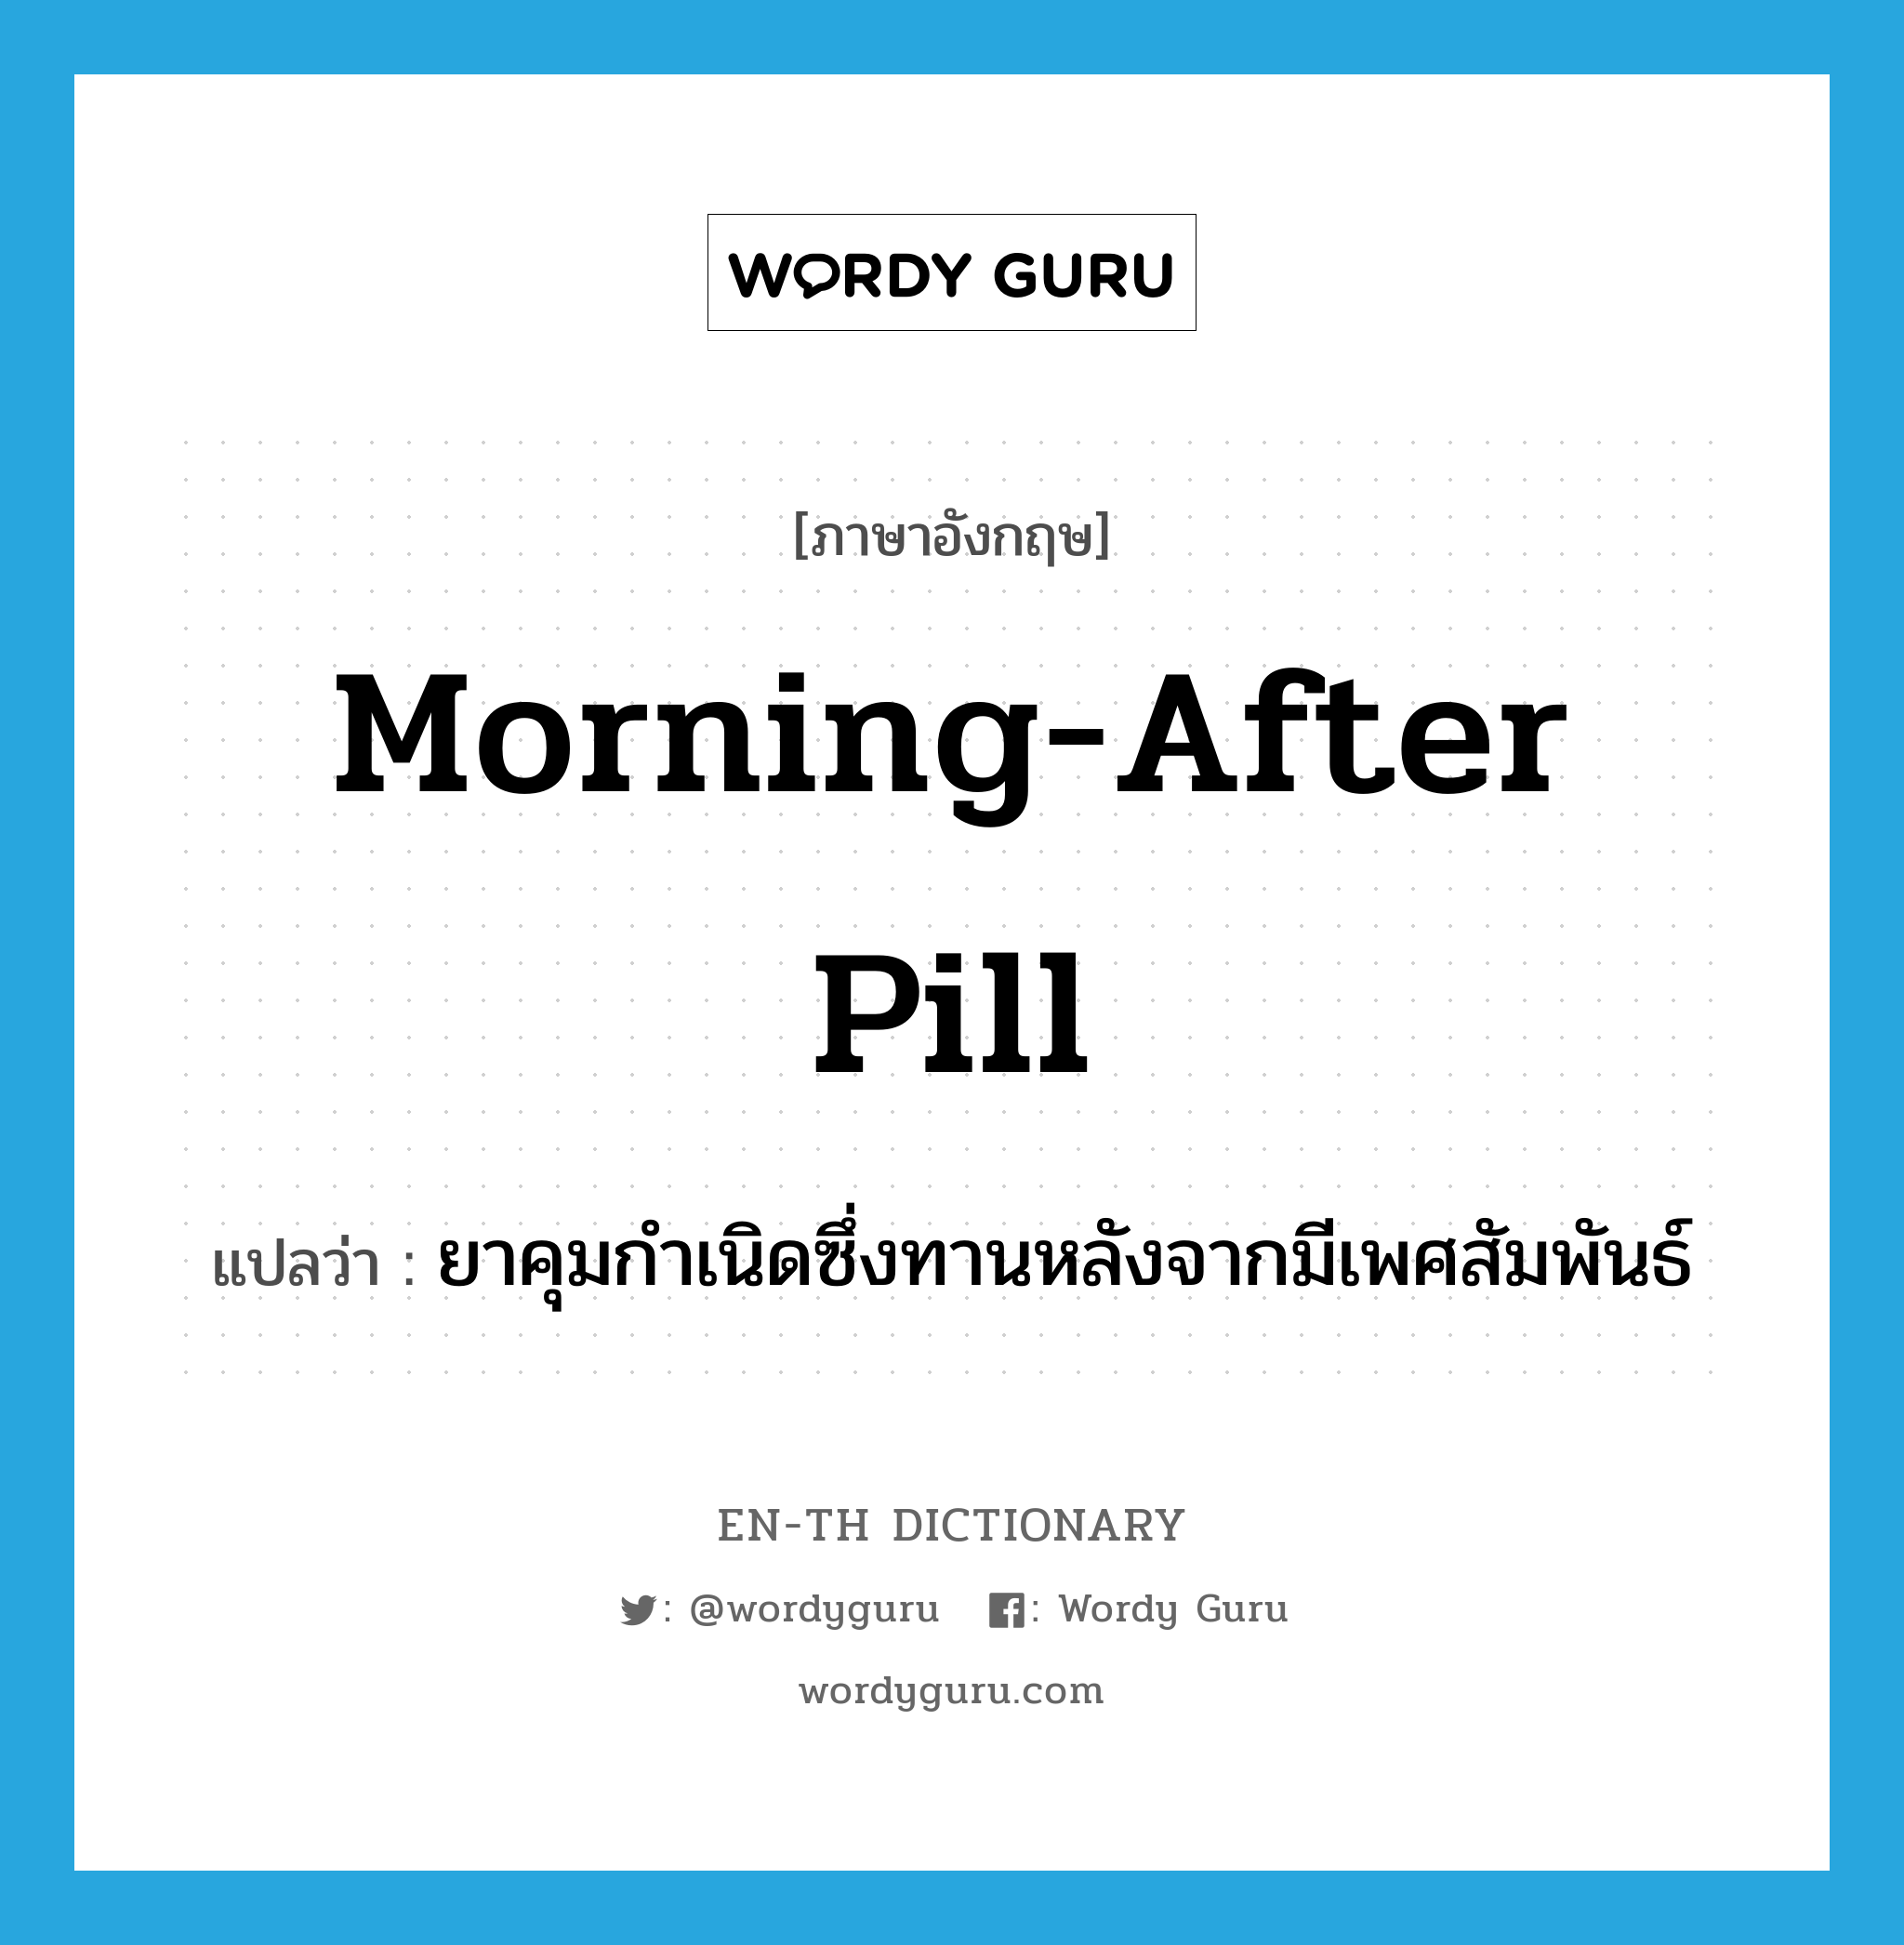 morning-after pill แปลว่า?, คำศัพท์ภาษาอังกฤษ morning-after pill แปลว่า ยาคุมกำเนิดซึ่งทานหลังจากมีเพศสัมพันธ์ ประเภท N หมวด N